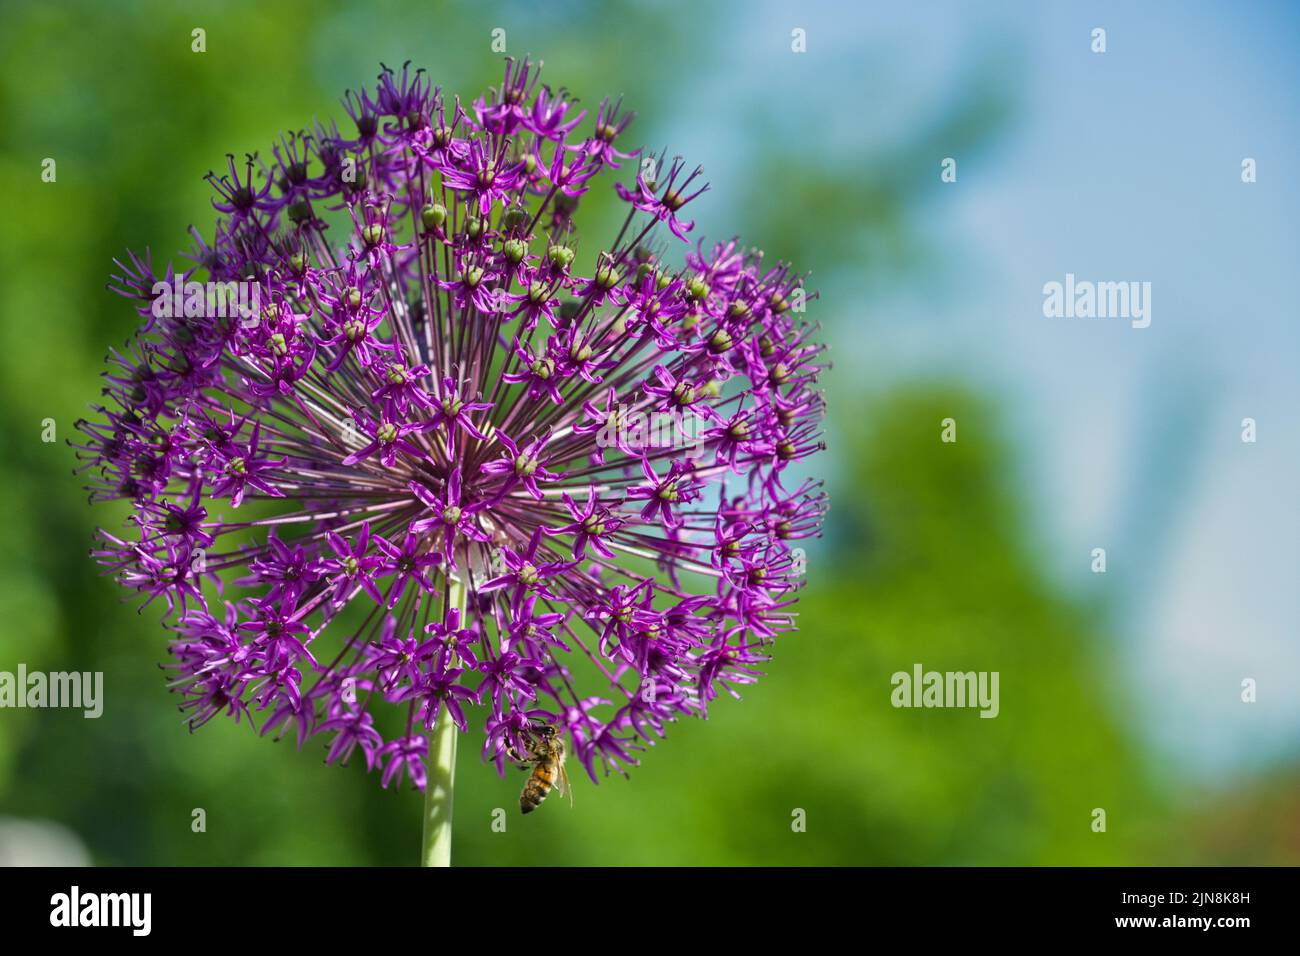 Eine Nahaufnahme einer wunderschönen, alliumvioletten Regenblume unter dem Sonnenlicht Stockfoto